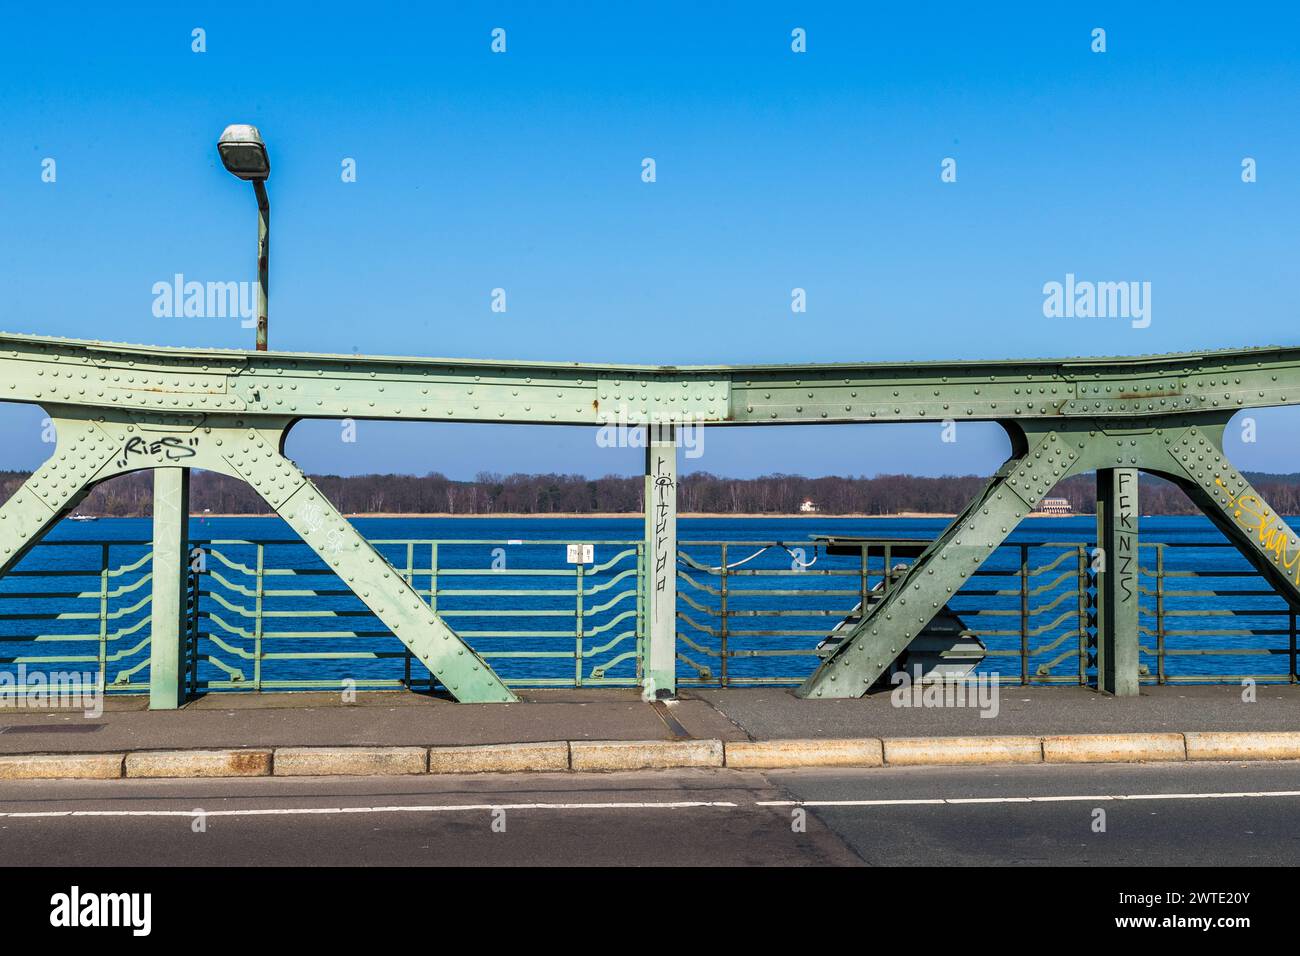 Sur le pont de Glienicke, la livrée différente (vert clair - Allemagne de l'est, vert foncé = Allemagne de l'Ouest) a été conservée même après la réunification allemande. Glienicker Brücke, Potsdam/Berlin, Allemagne Banque D'Images